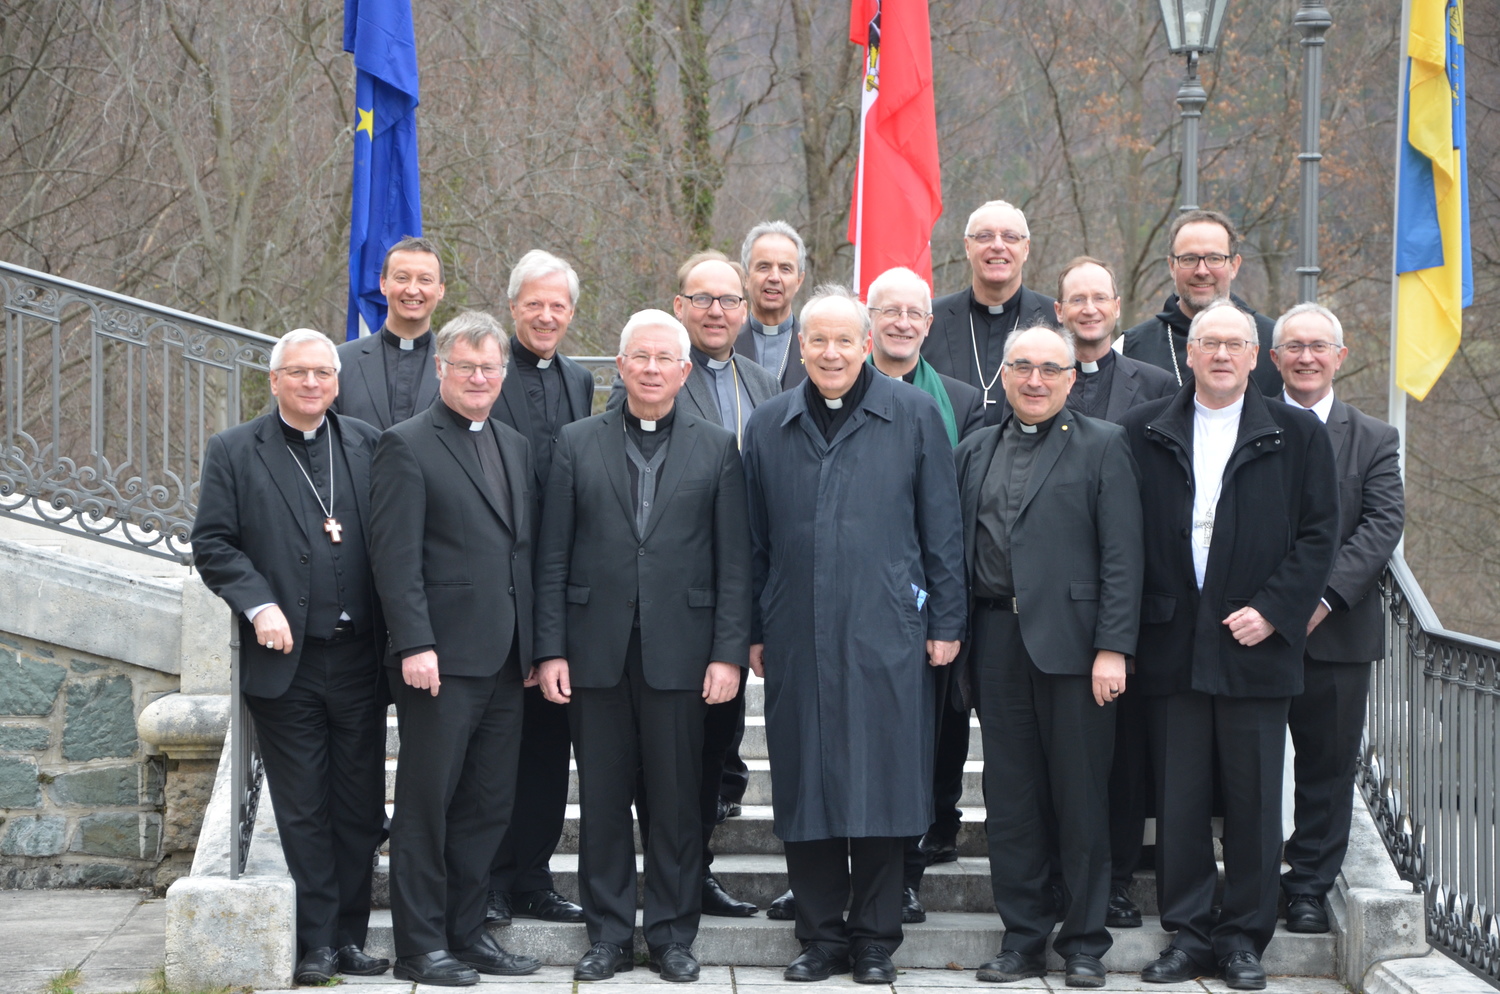 'Demokratie lebt vom Vertrauen': Erklärung der Bischofskonferenz zur aktuellen politischen Lage